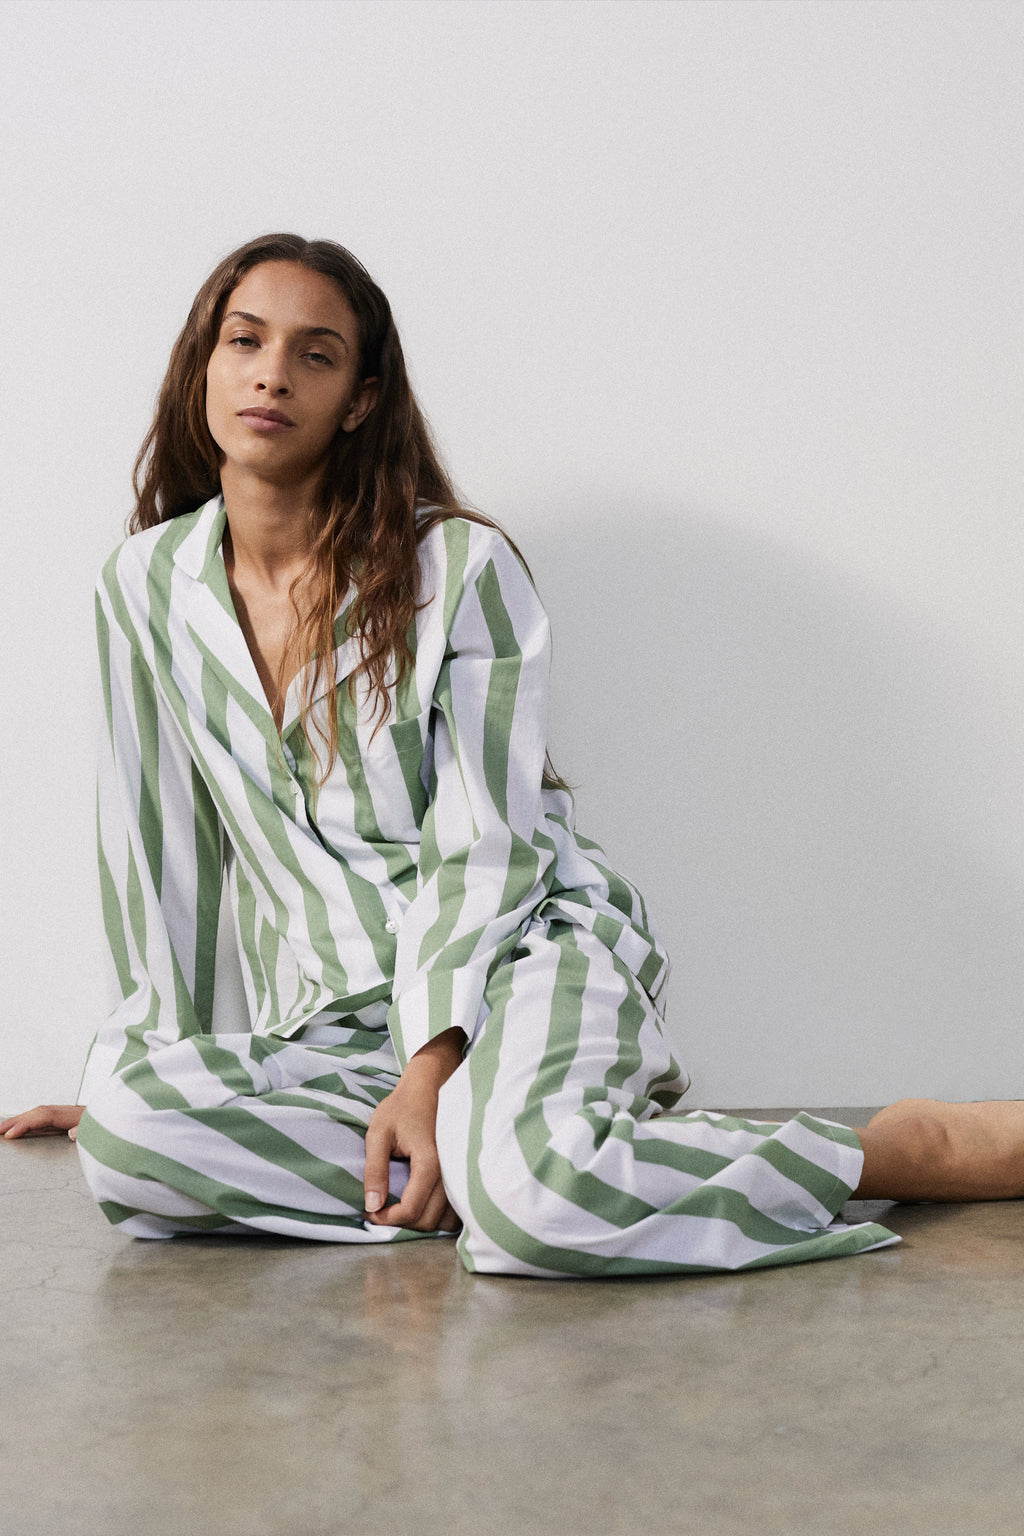 Women's Green Pajamas, Robes & Sleepwear